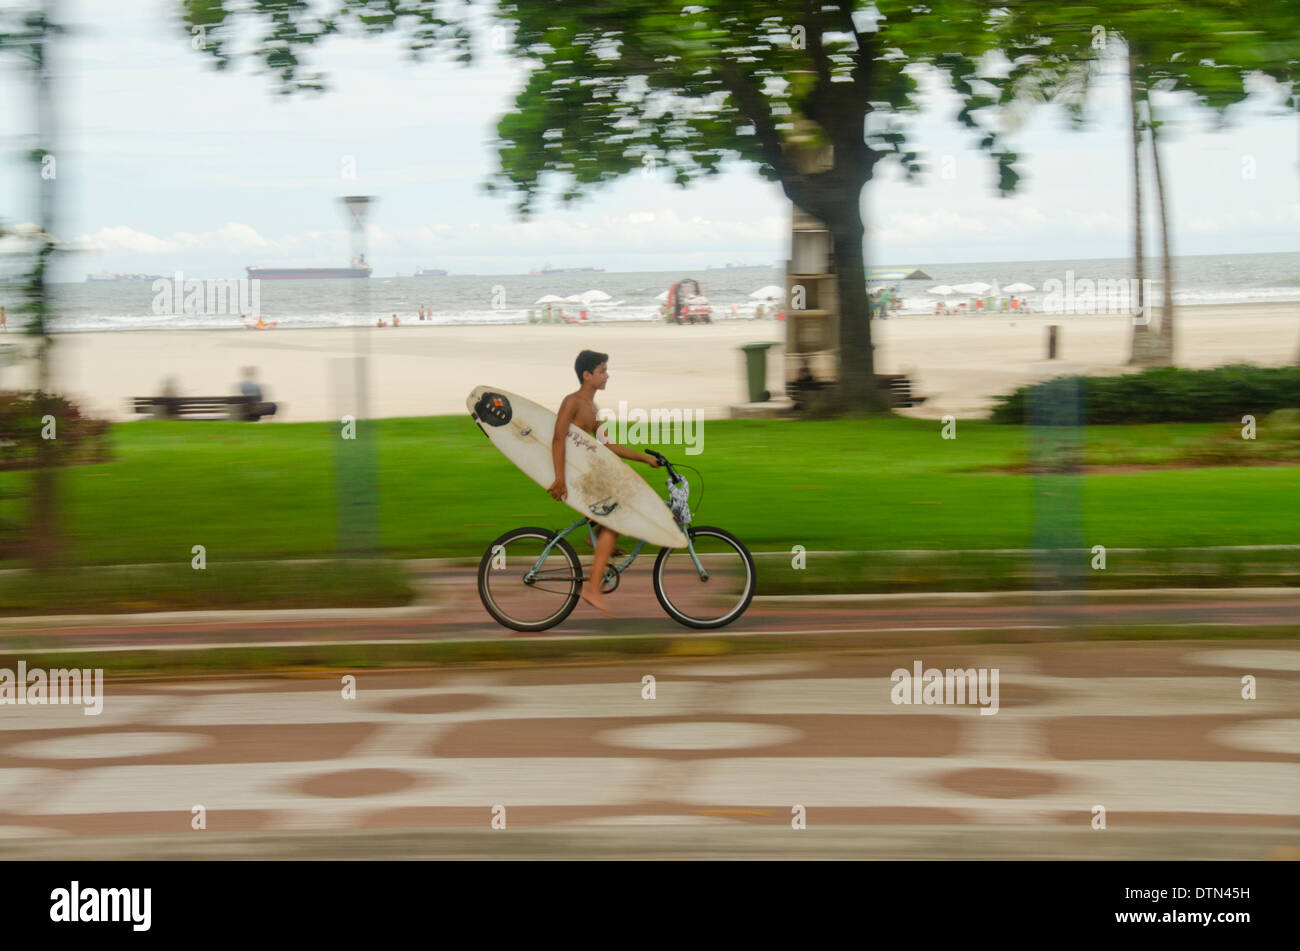 Il Brasile, Sao Paulo, Santos. Giovane ragazzo in bici che porta tavola da surf lungo il marciapiede sul lungomare. Foto Stock